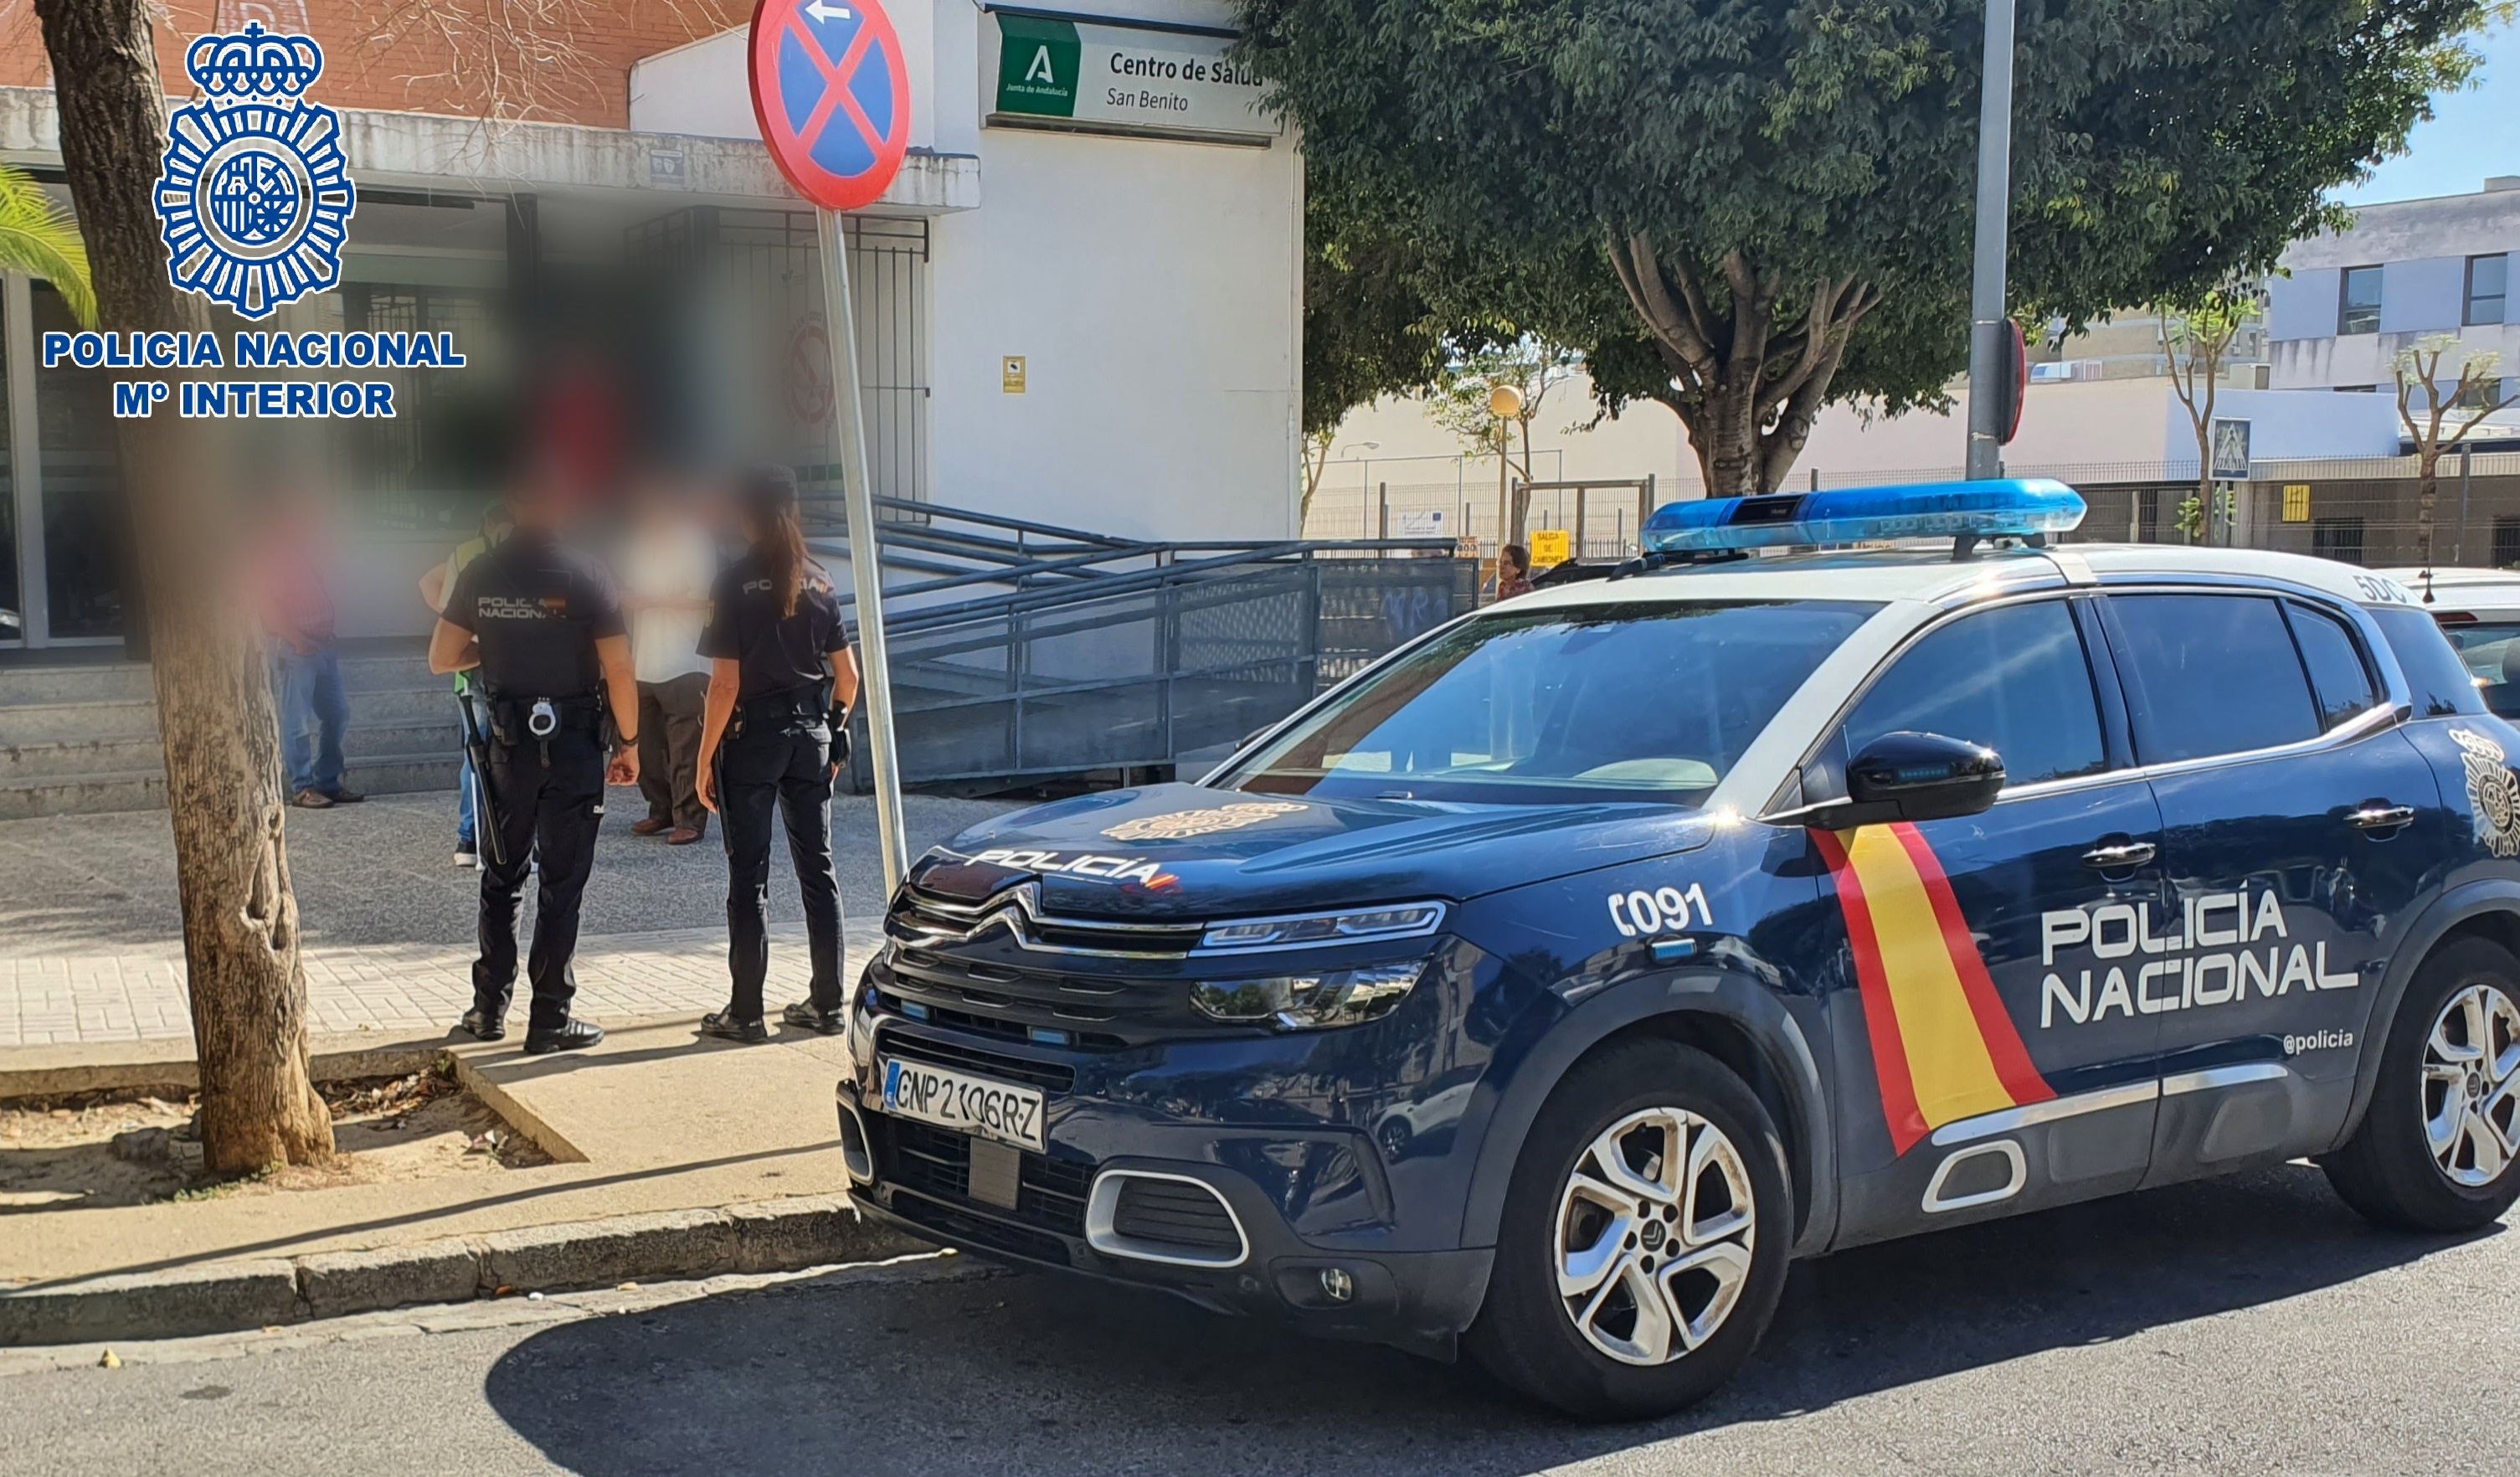 La Policía Nacional en un centro de salud de Jerez esta semana.